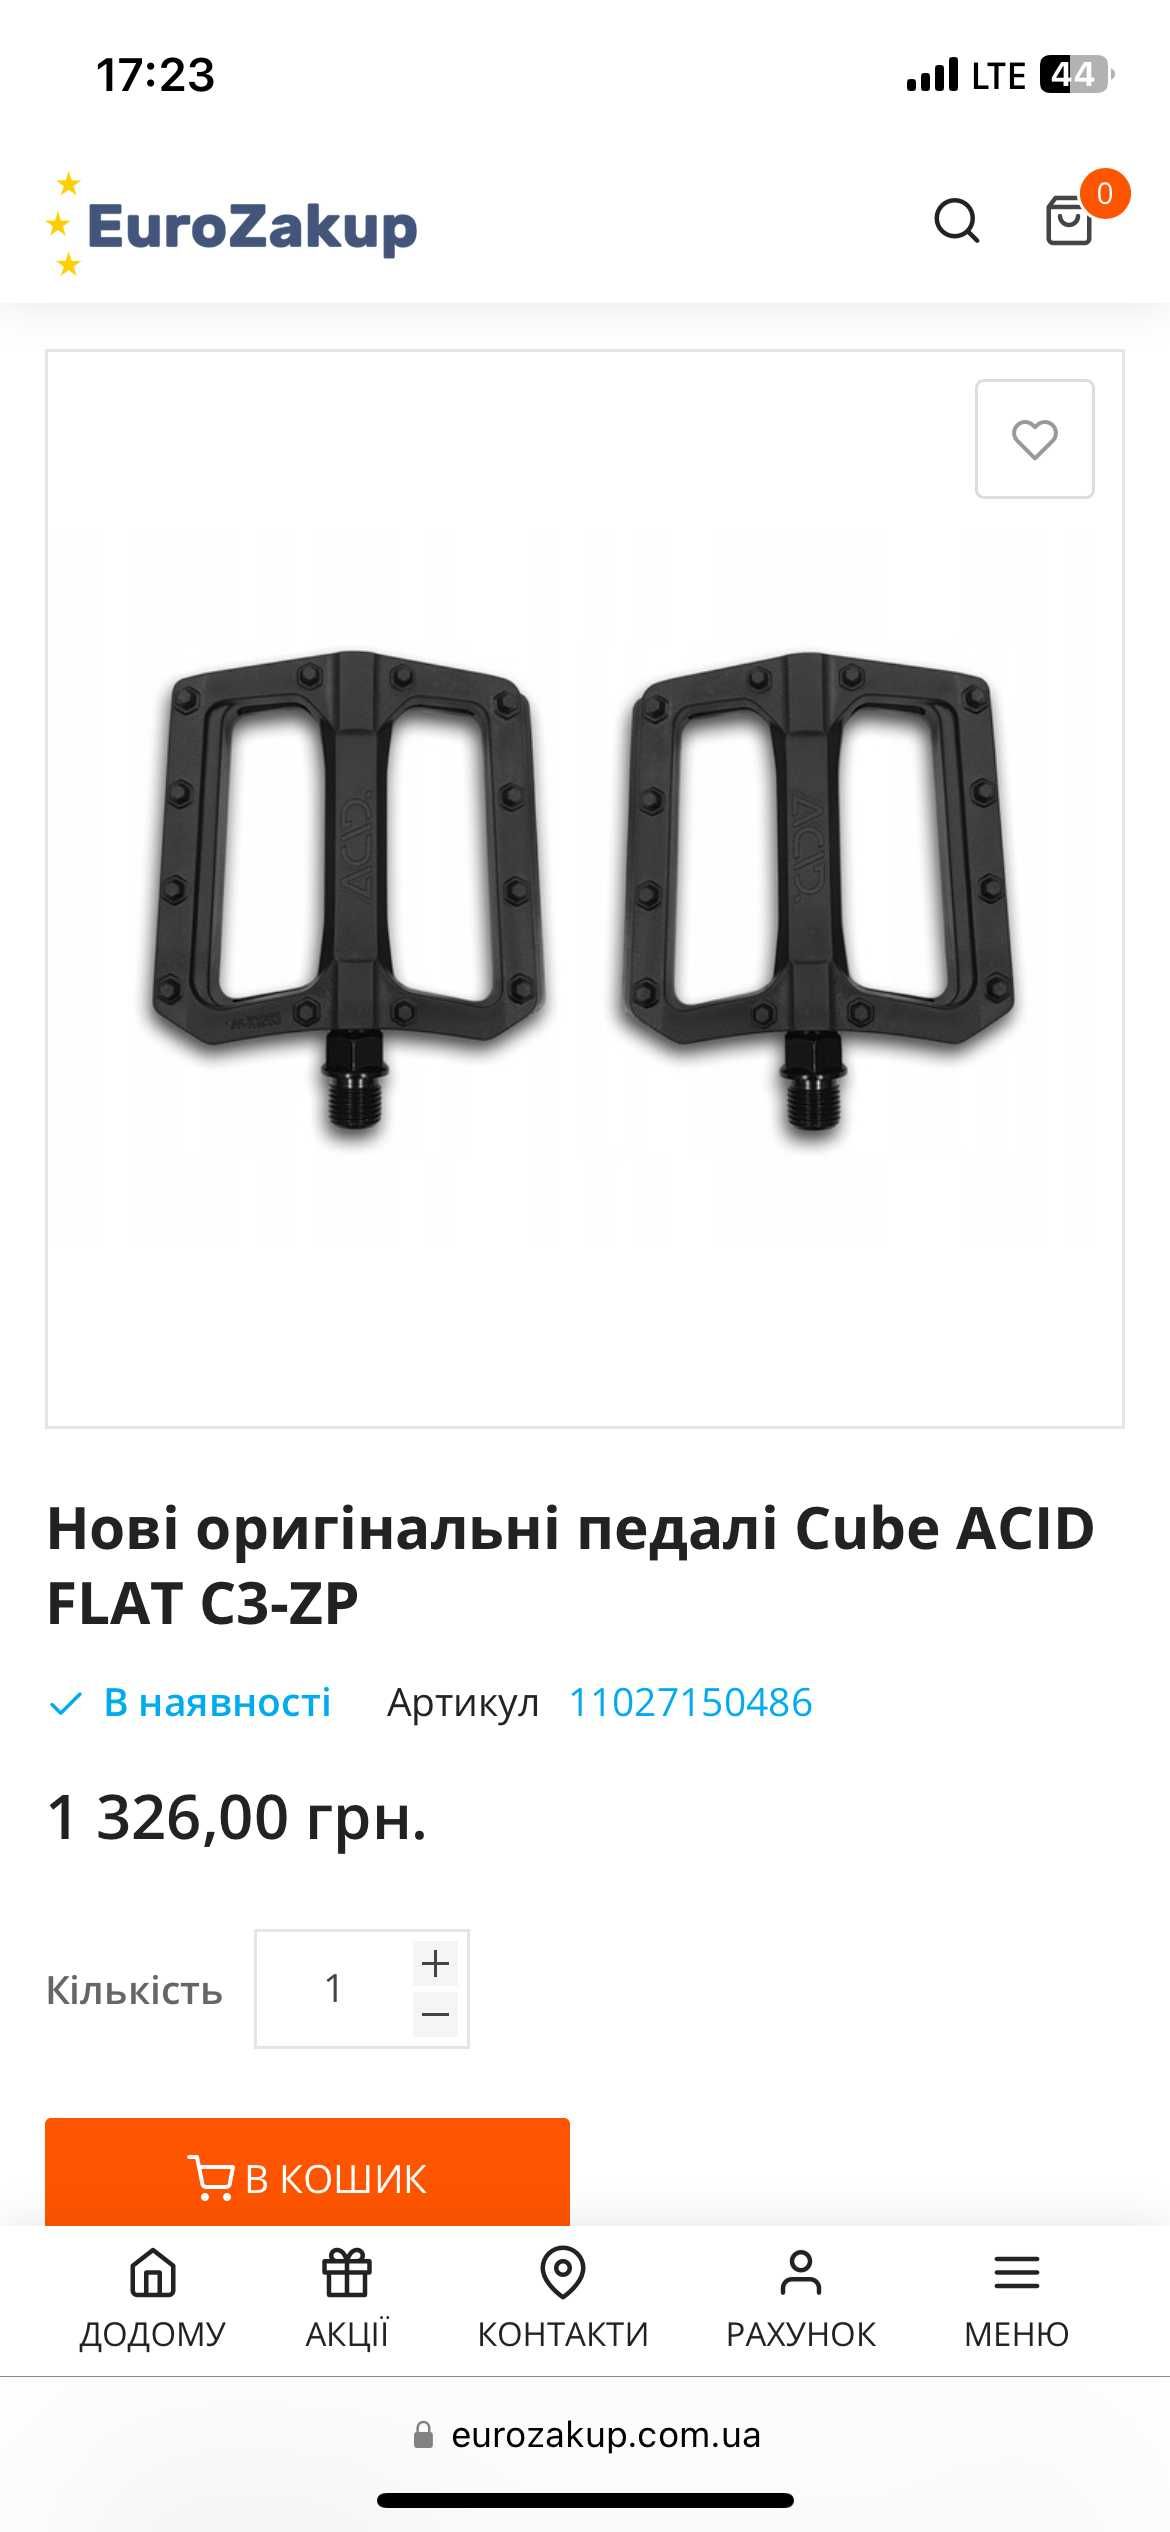 Оригінальні педалі Cube Acid Flat C3-ZP (практично нові)